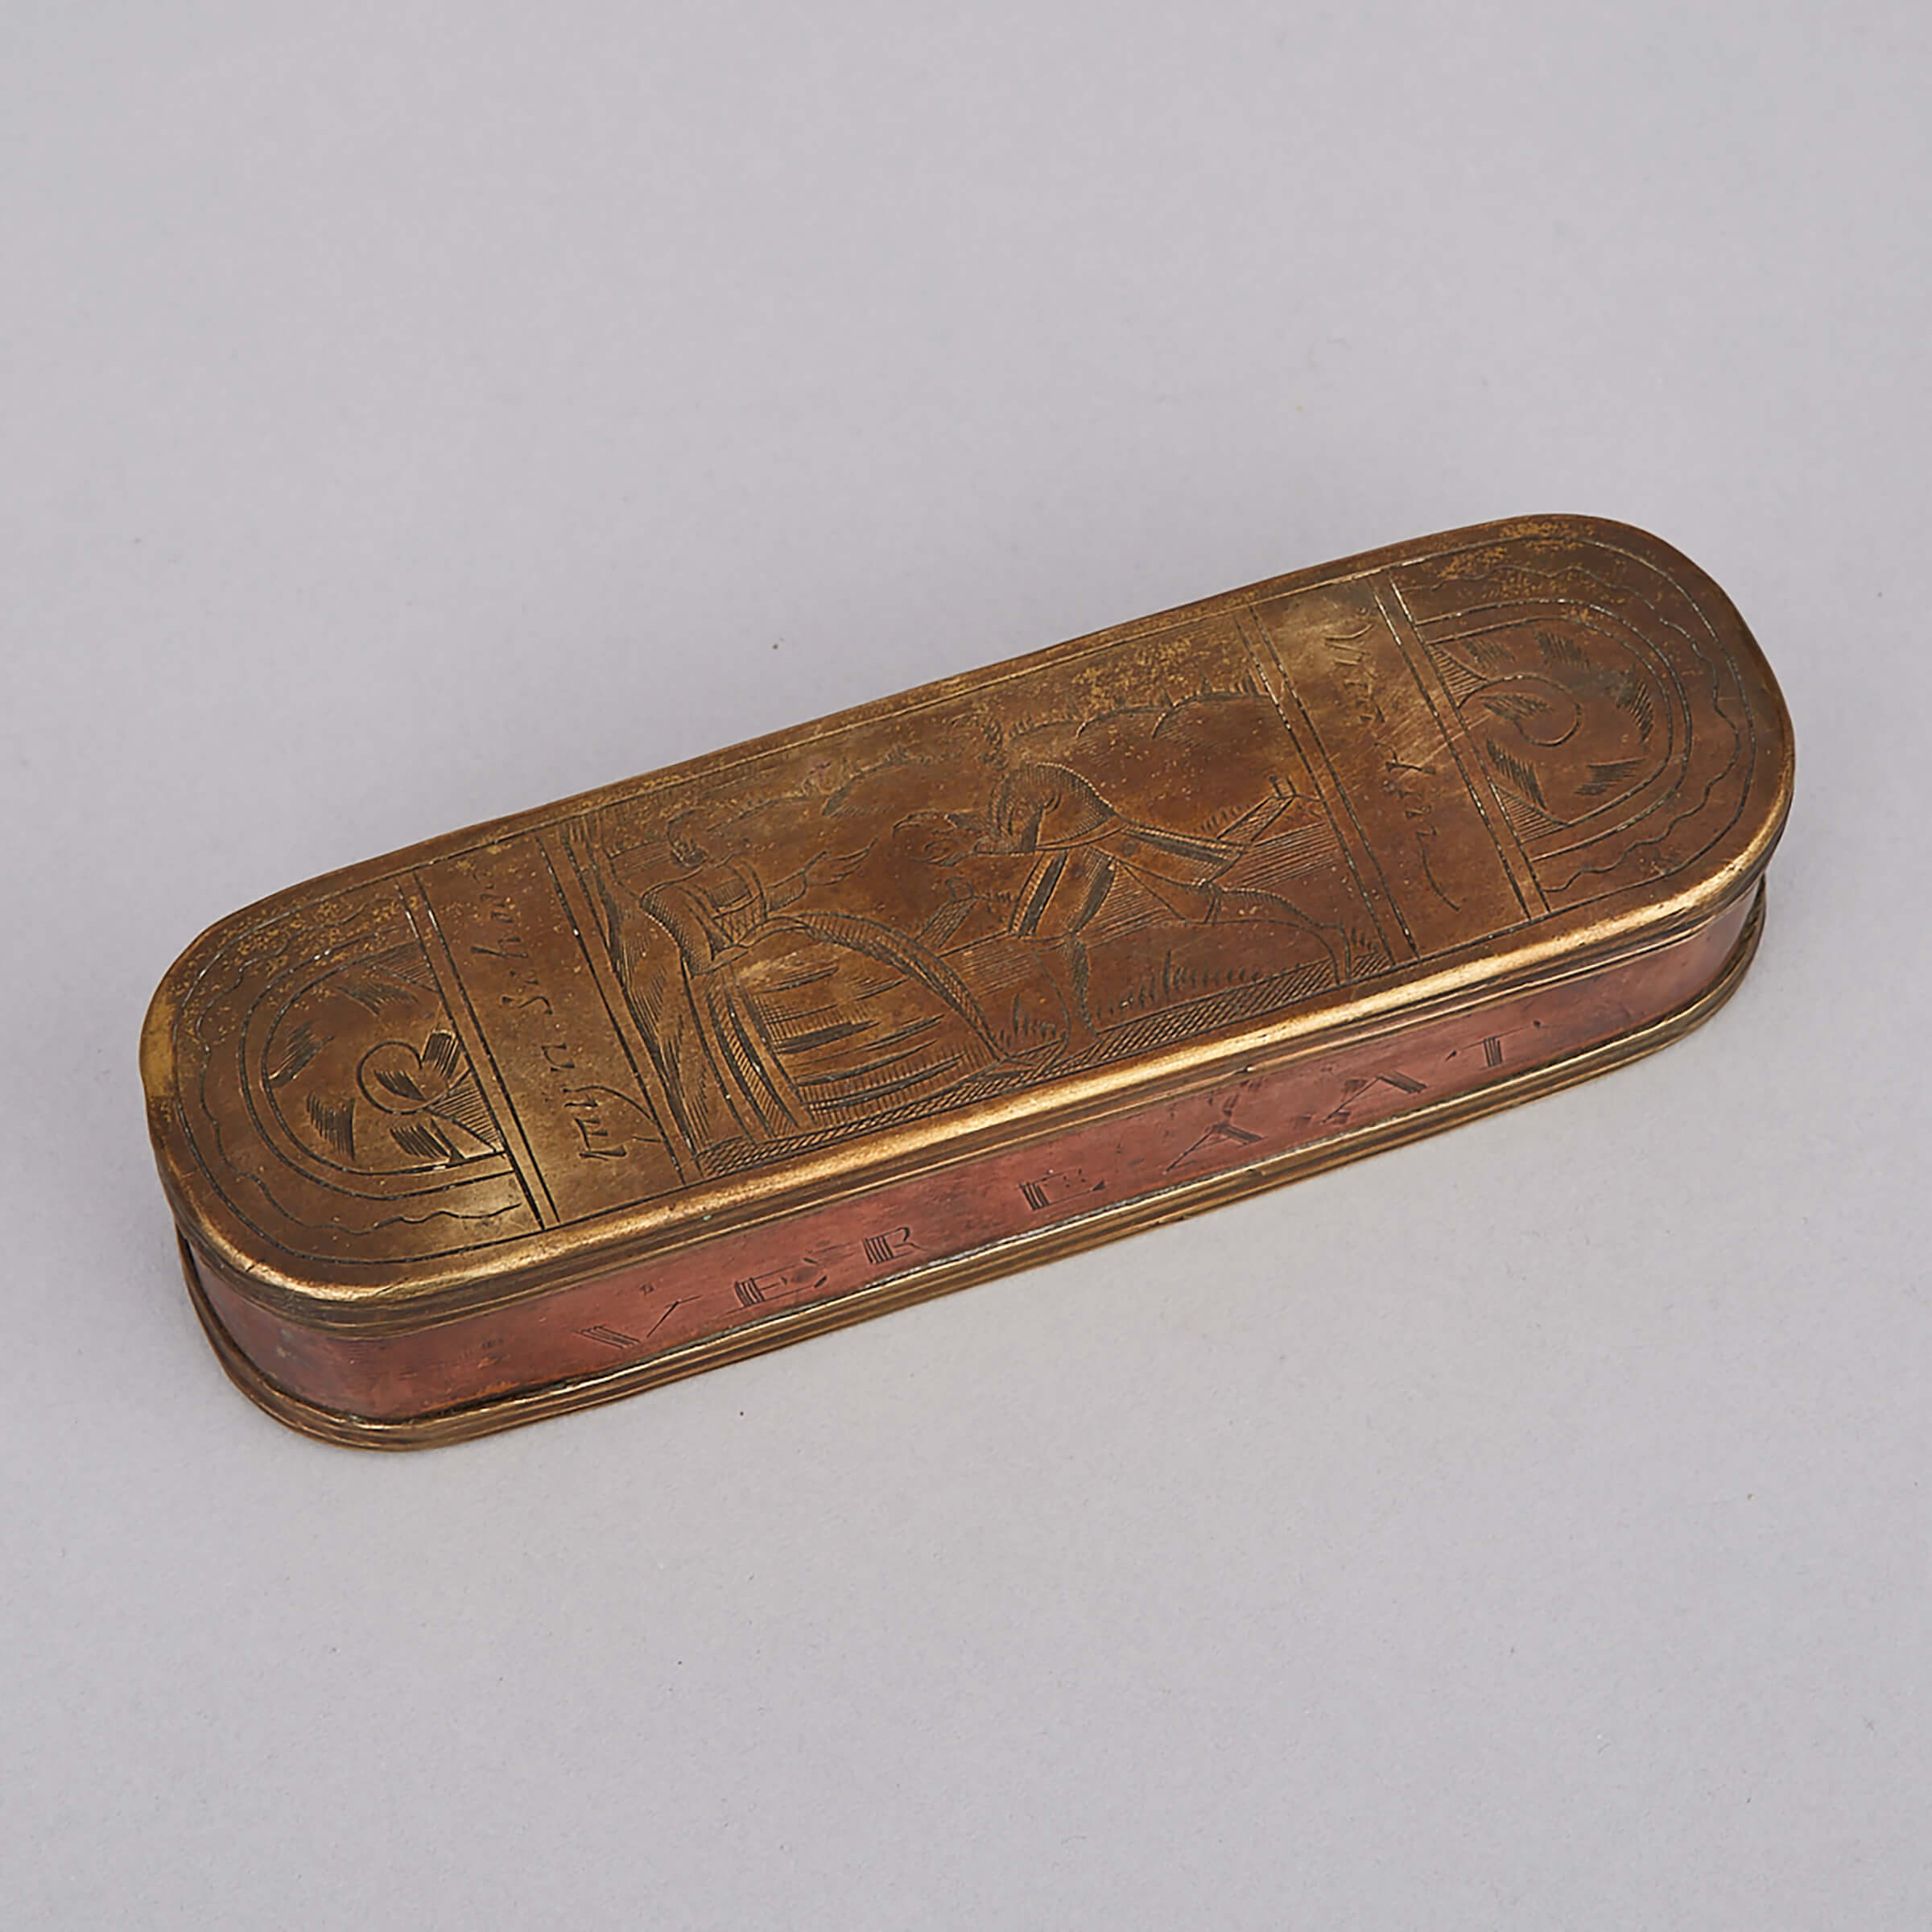 Dutch Brass and Copper Tobacco Box, mid 18th century